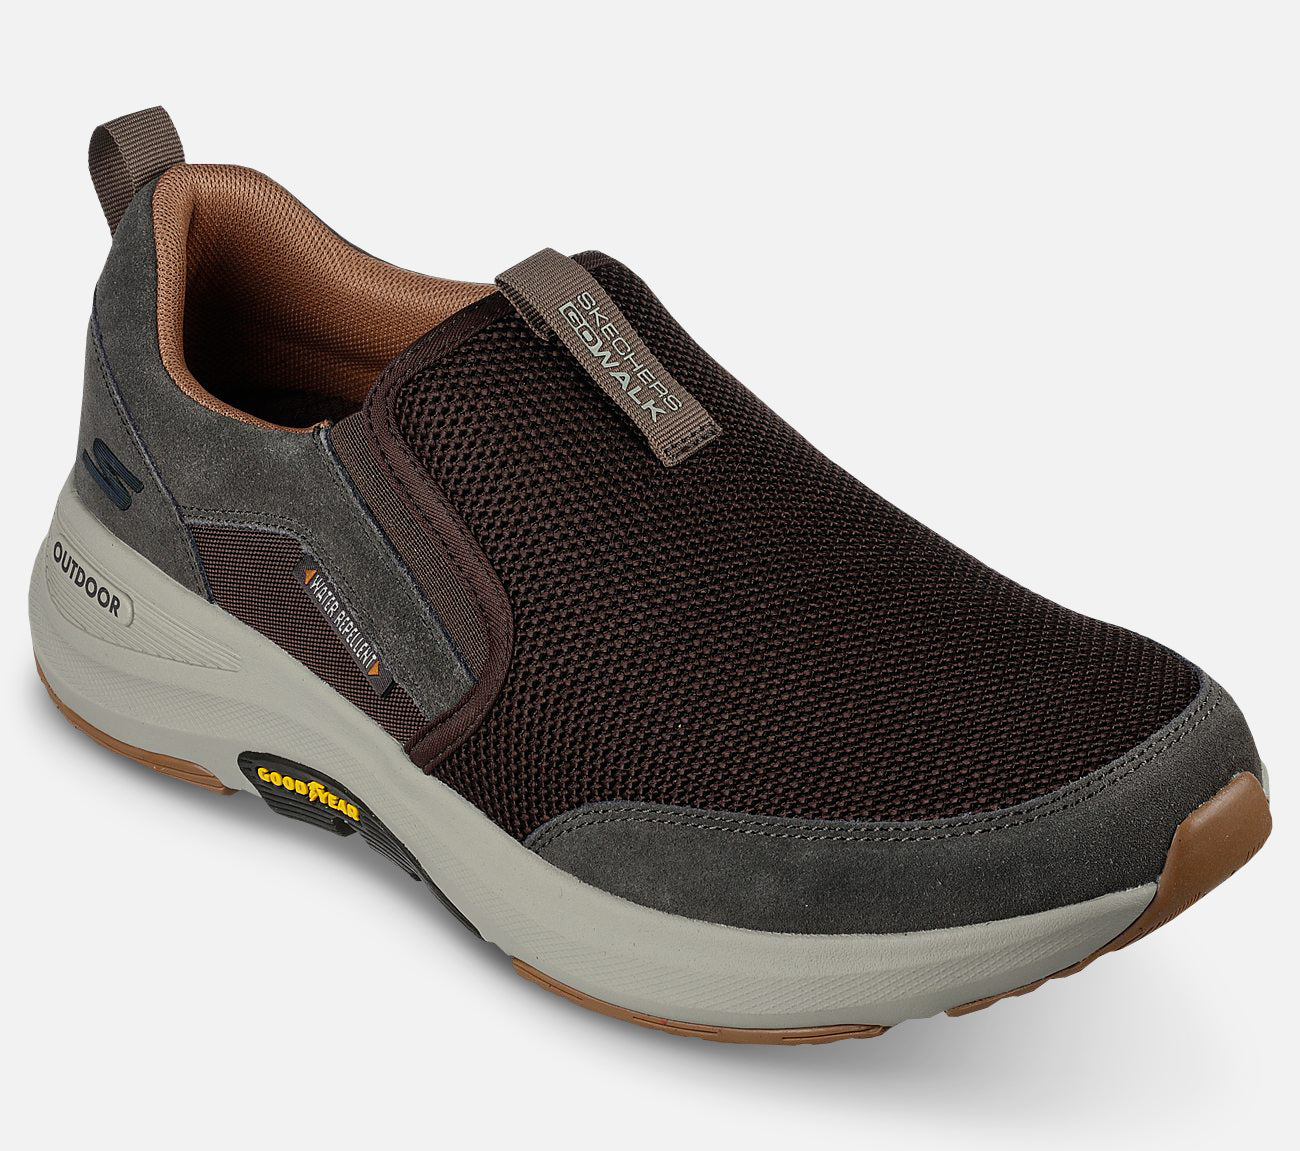 GO WALK Outdoor - Andes - Water Repellent Shoe Skechers